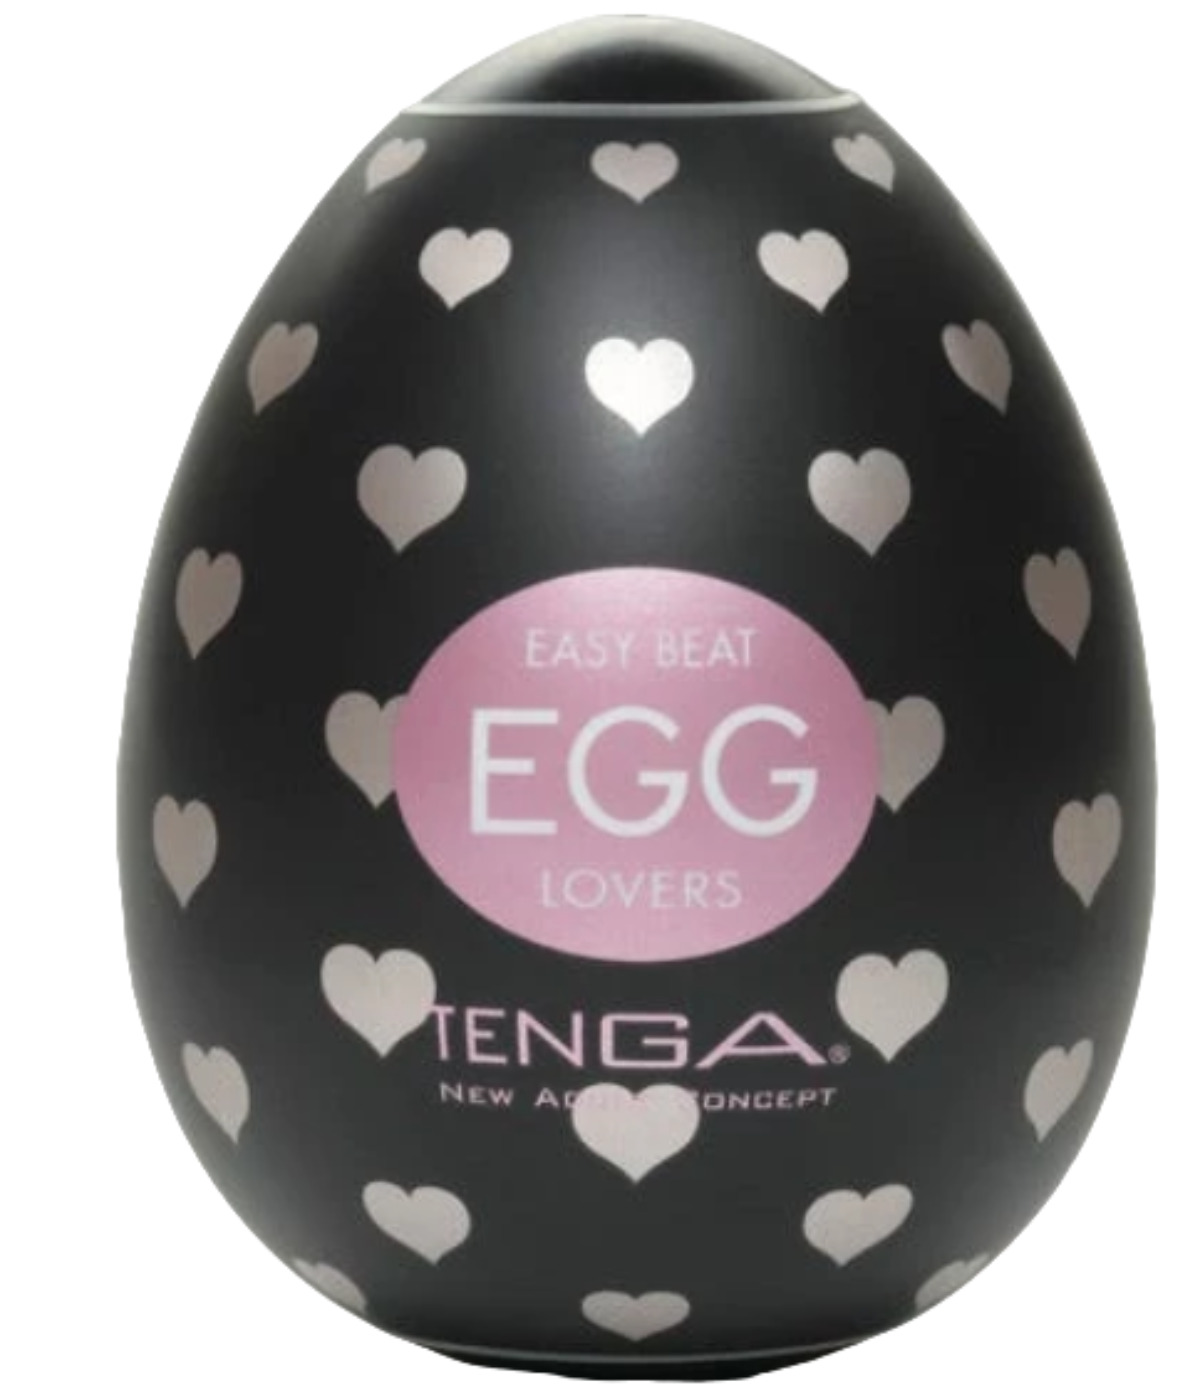 Tenga Egg Lovers // Source : AMORELIE